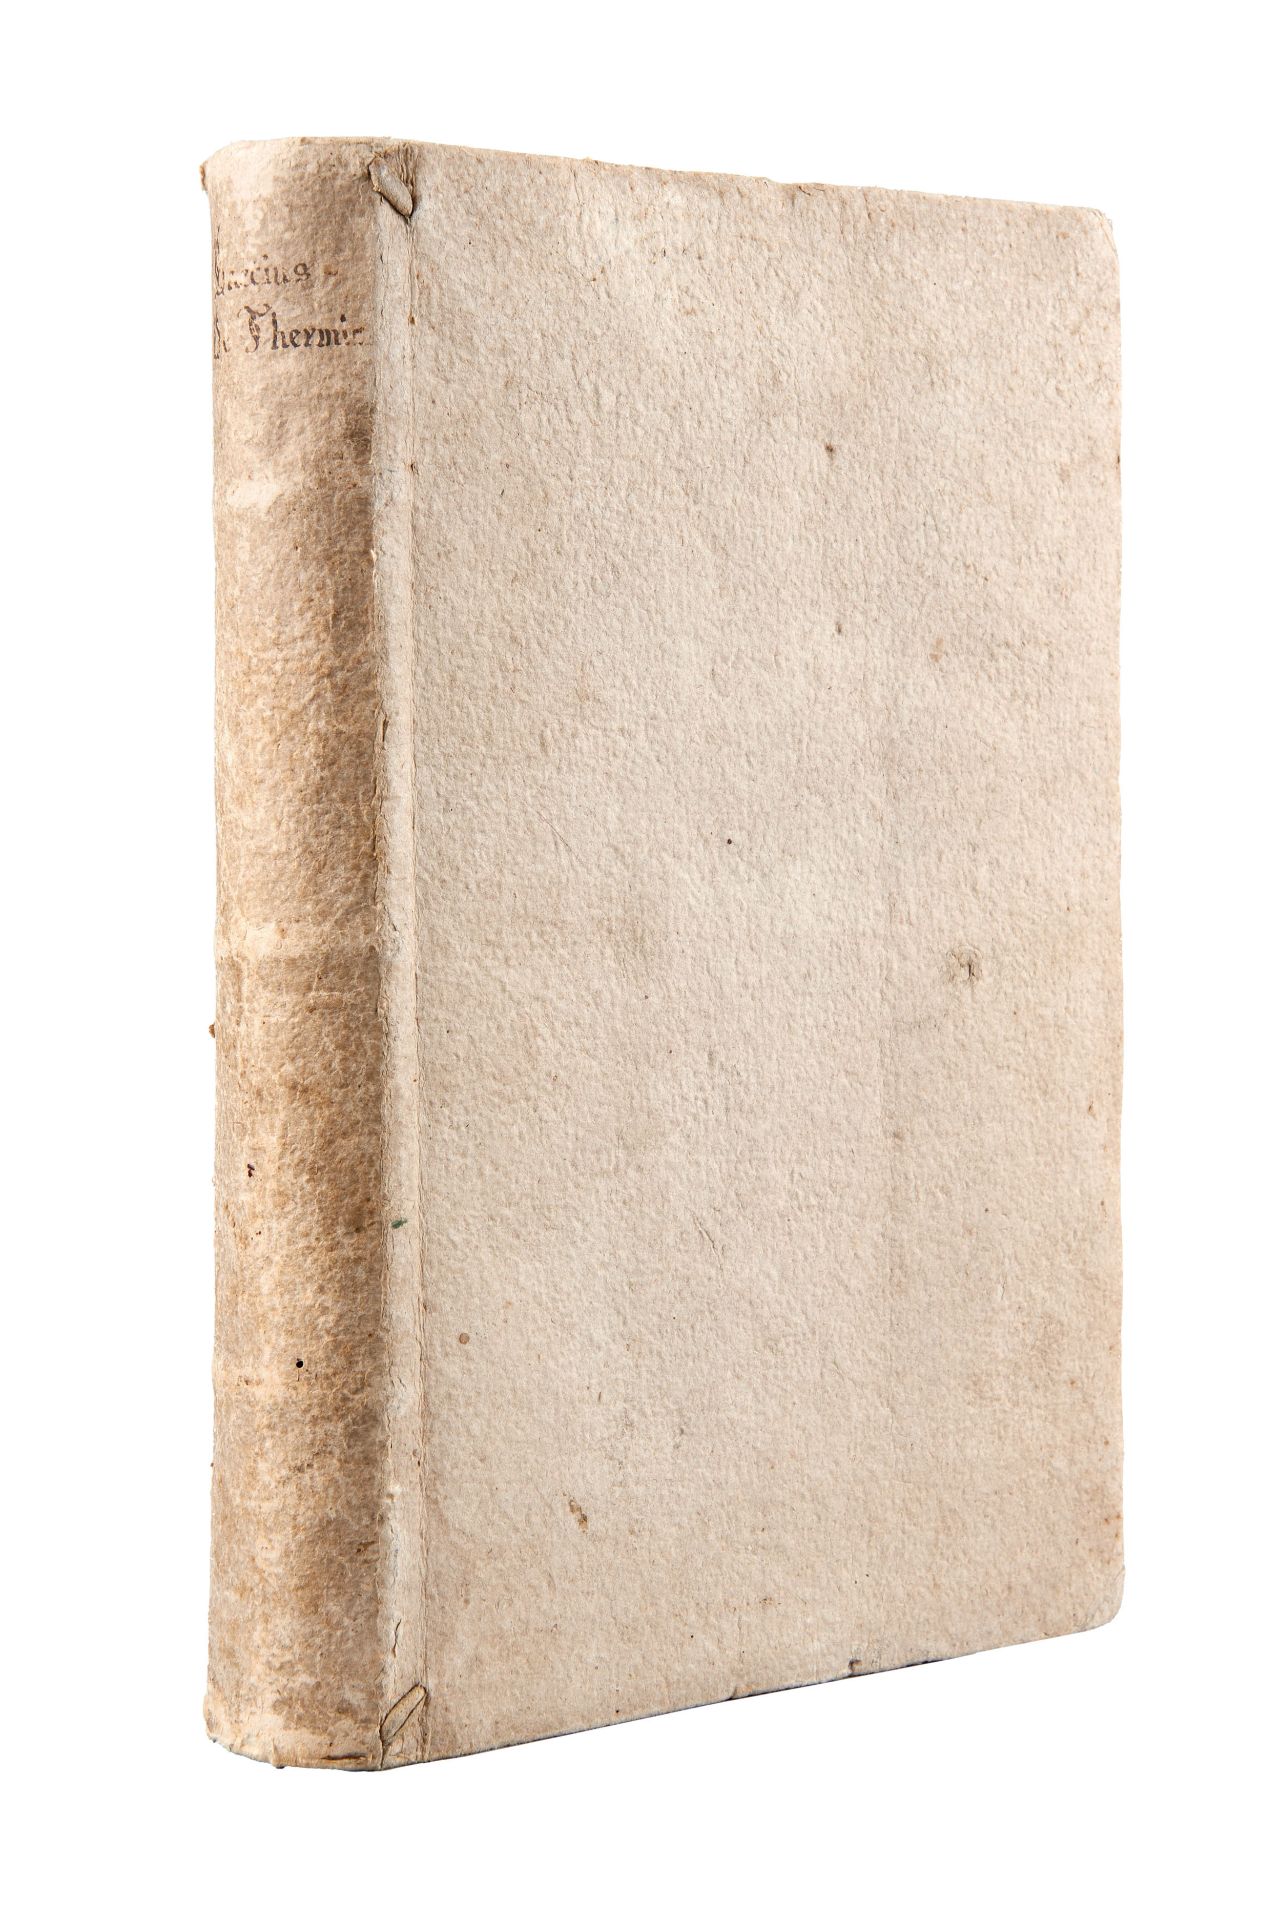 BACCI, Andrea (1524-1600). De Thermis...in quo agitur de universa acquarum natura. Venice: - Bild 3 aus 3